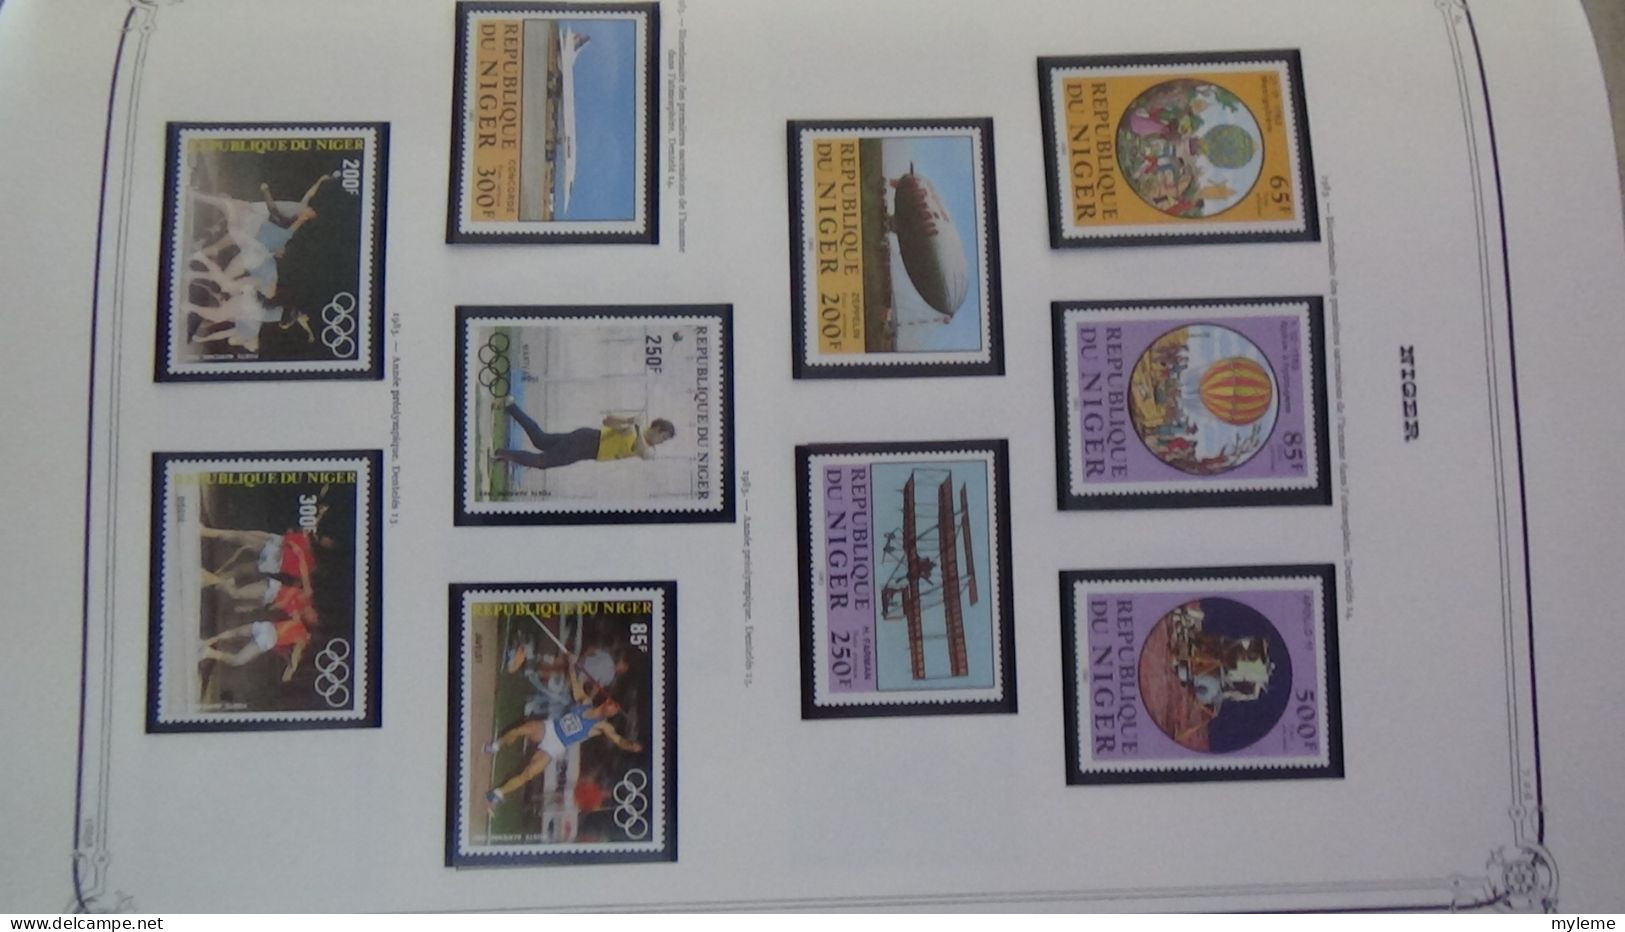 BC100 Collection de timbres et blocs ** du Niger sur feuille d'album.  A saisir !!!